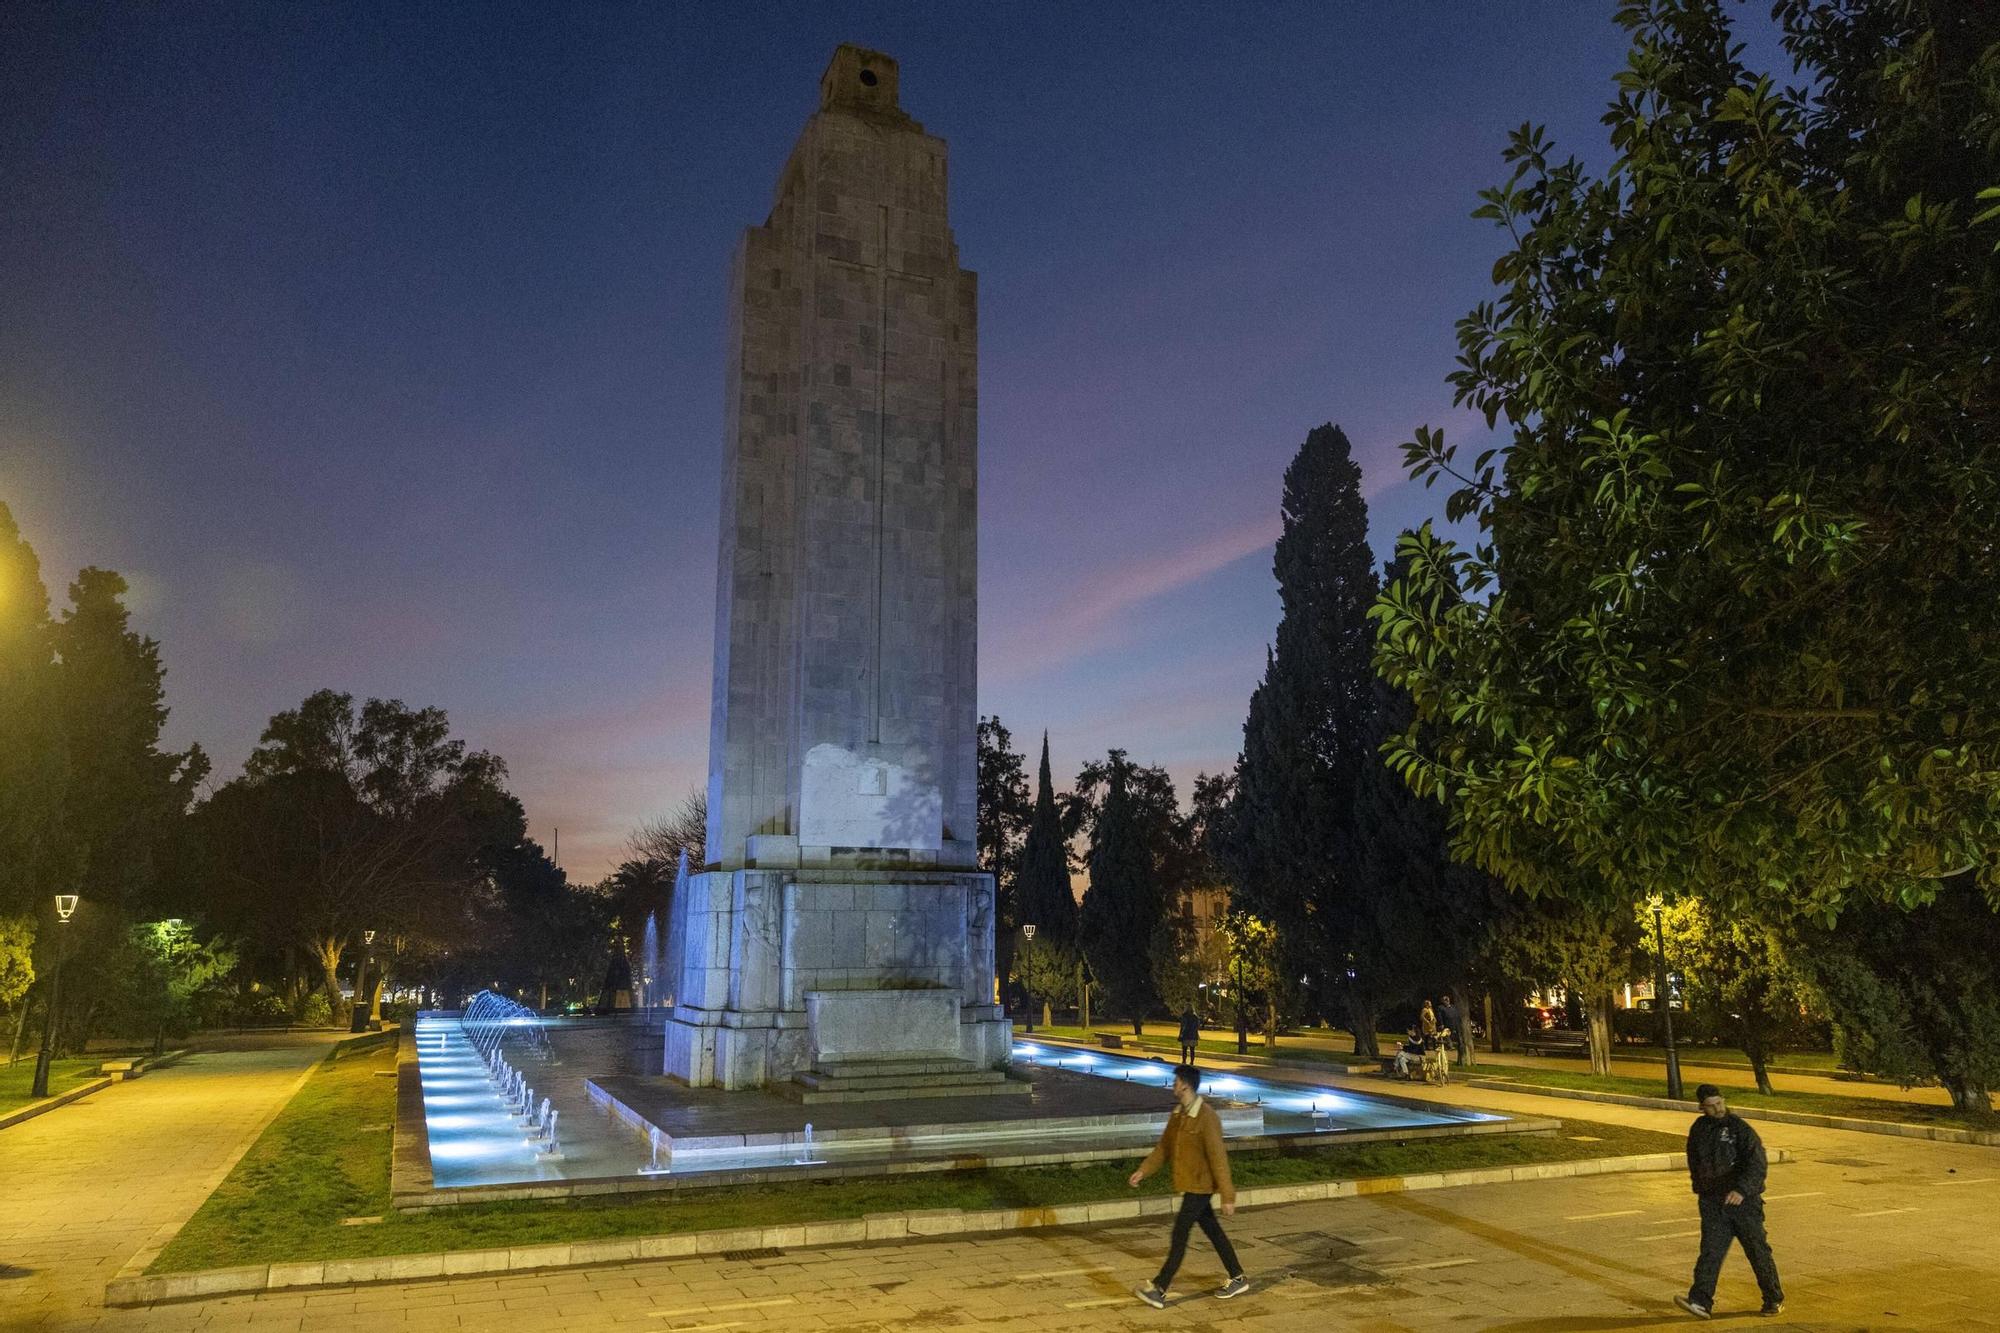 El Ayuntamiento de Palma ilumina el monumento de sa Feixina tras casi un año de apagón